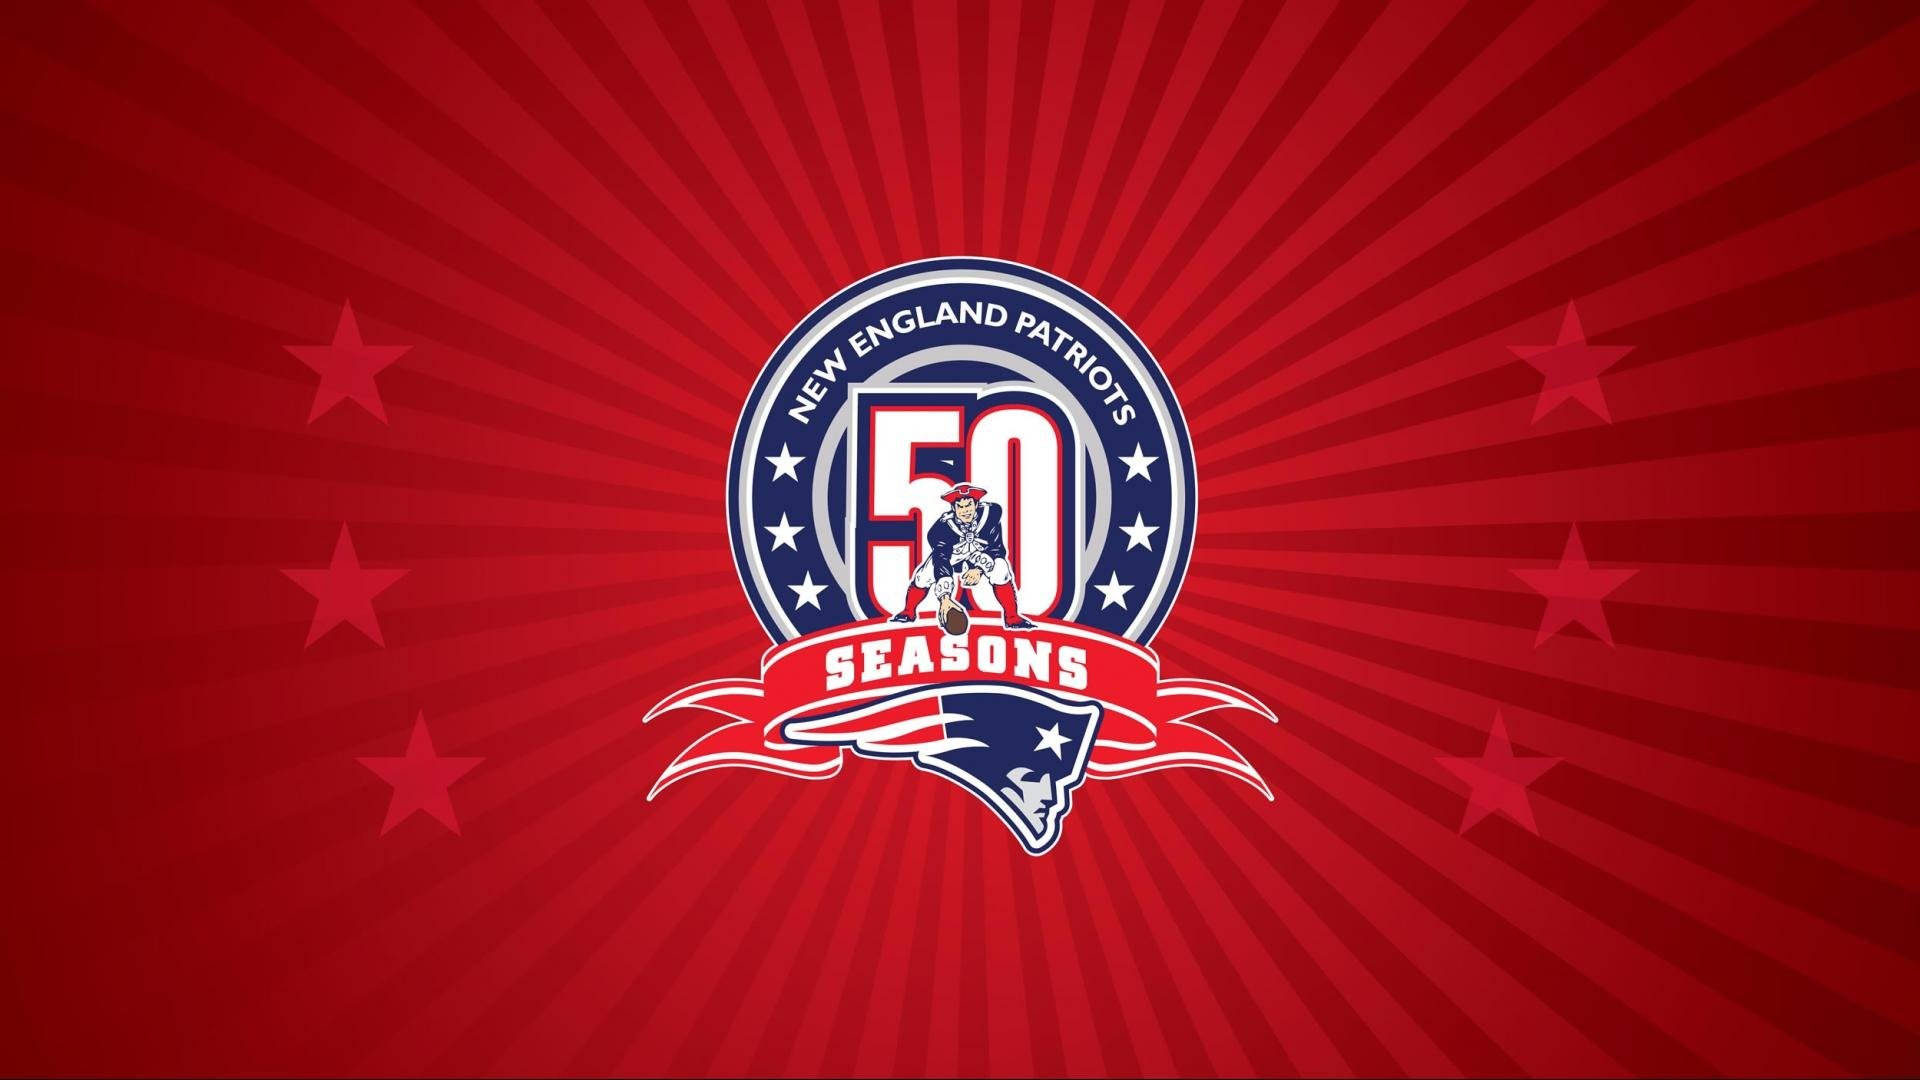 Patriots Logo 50 Seasons In Nfl Wallpaper